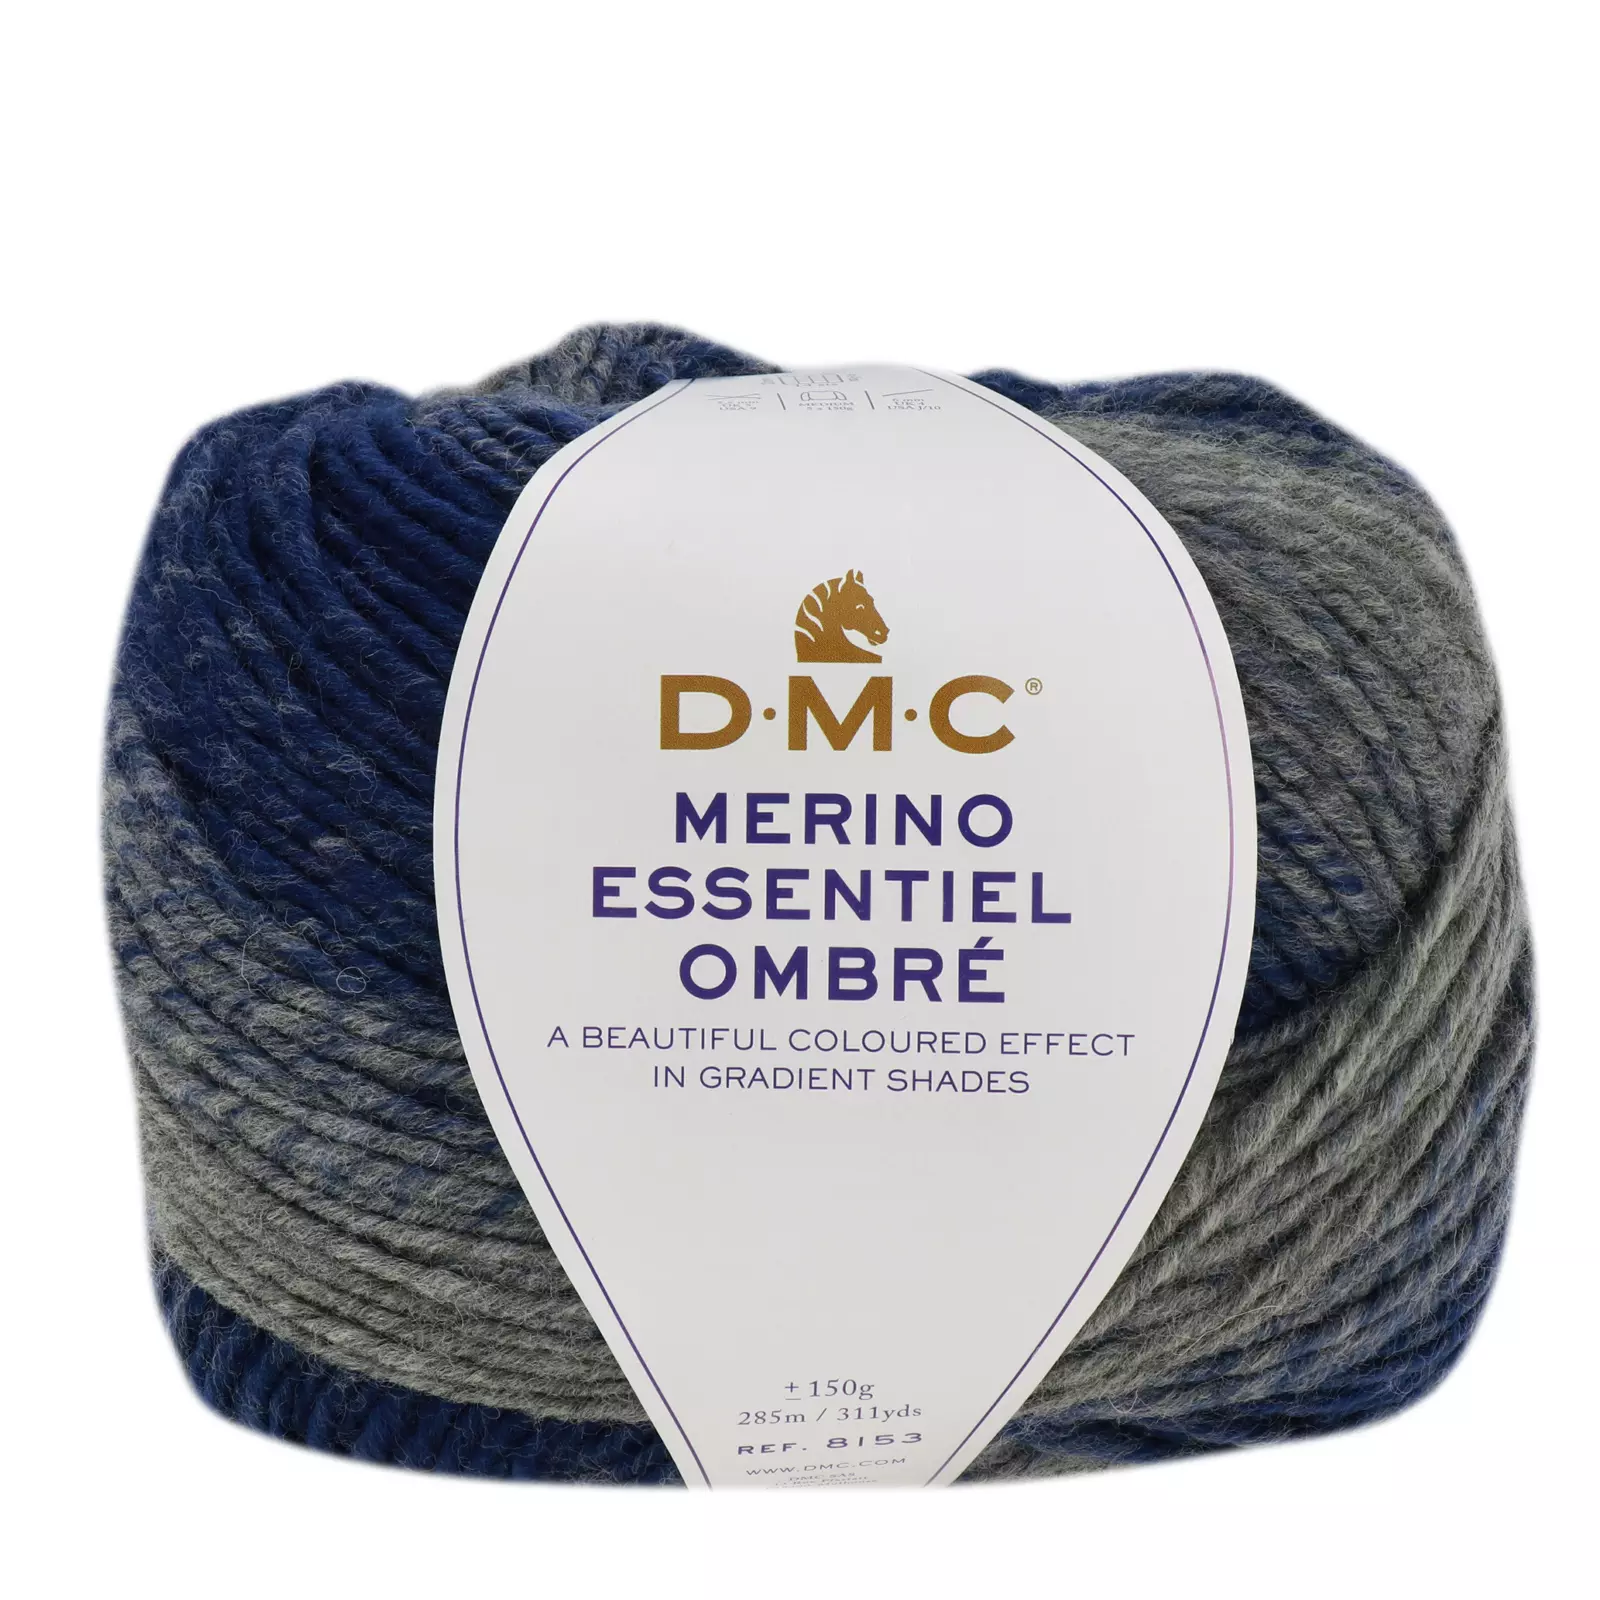 DMC Merino Essentiel Ombre - North sea -1002